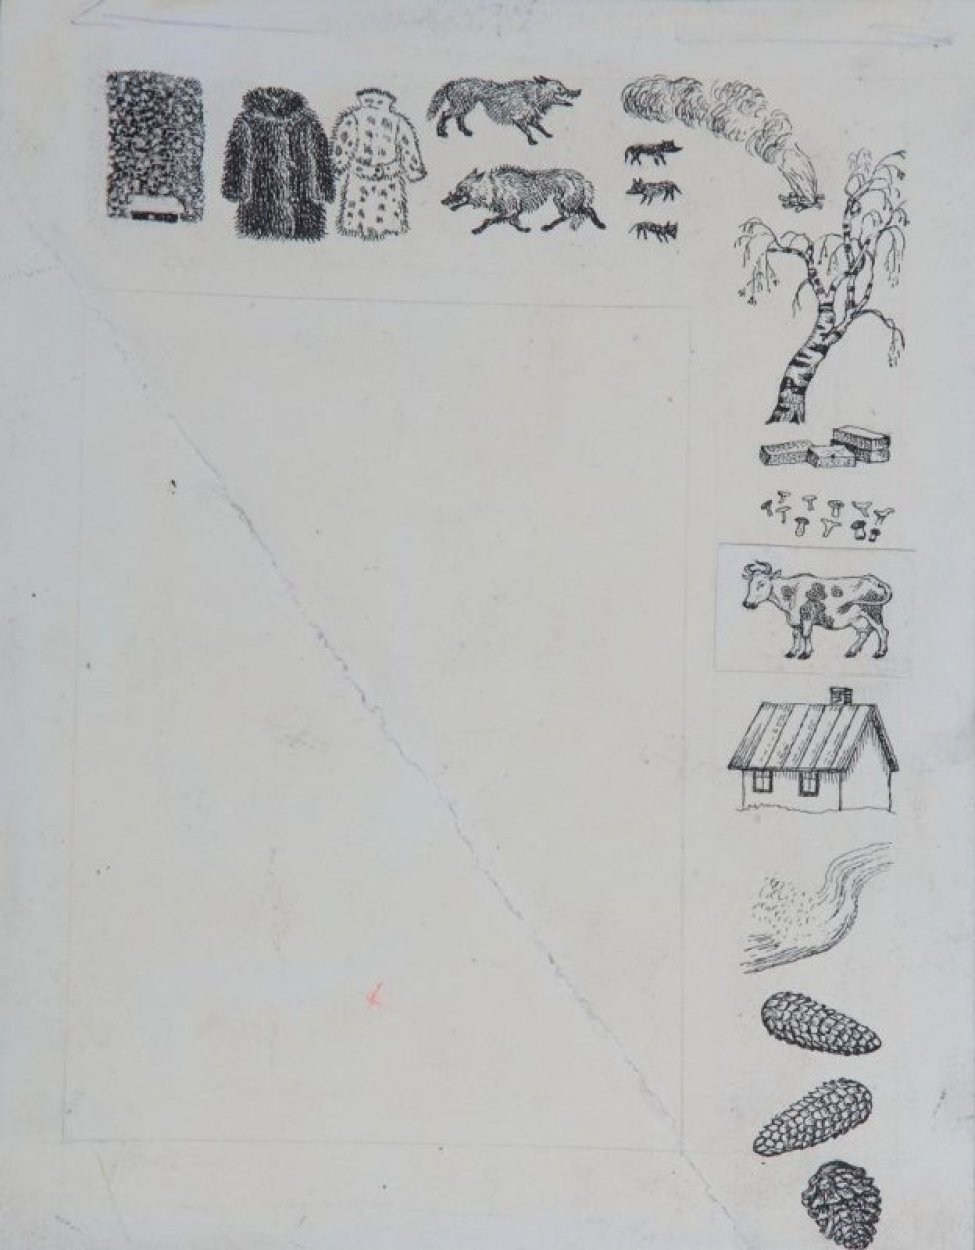 По верхнему и правому краям изображены: дом, занесенный снегом, две шубы, два волка, костер, дерево, грибы, корова, шишки еловые и кедровые.